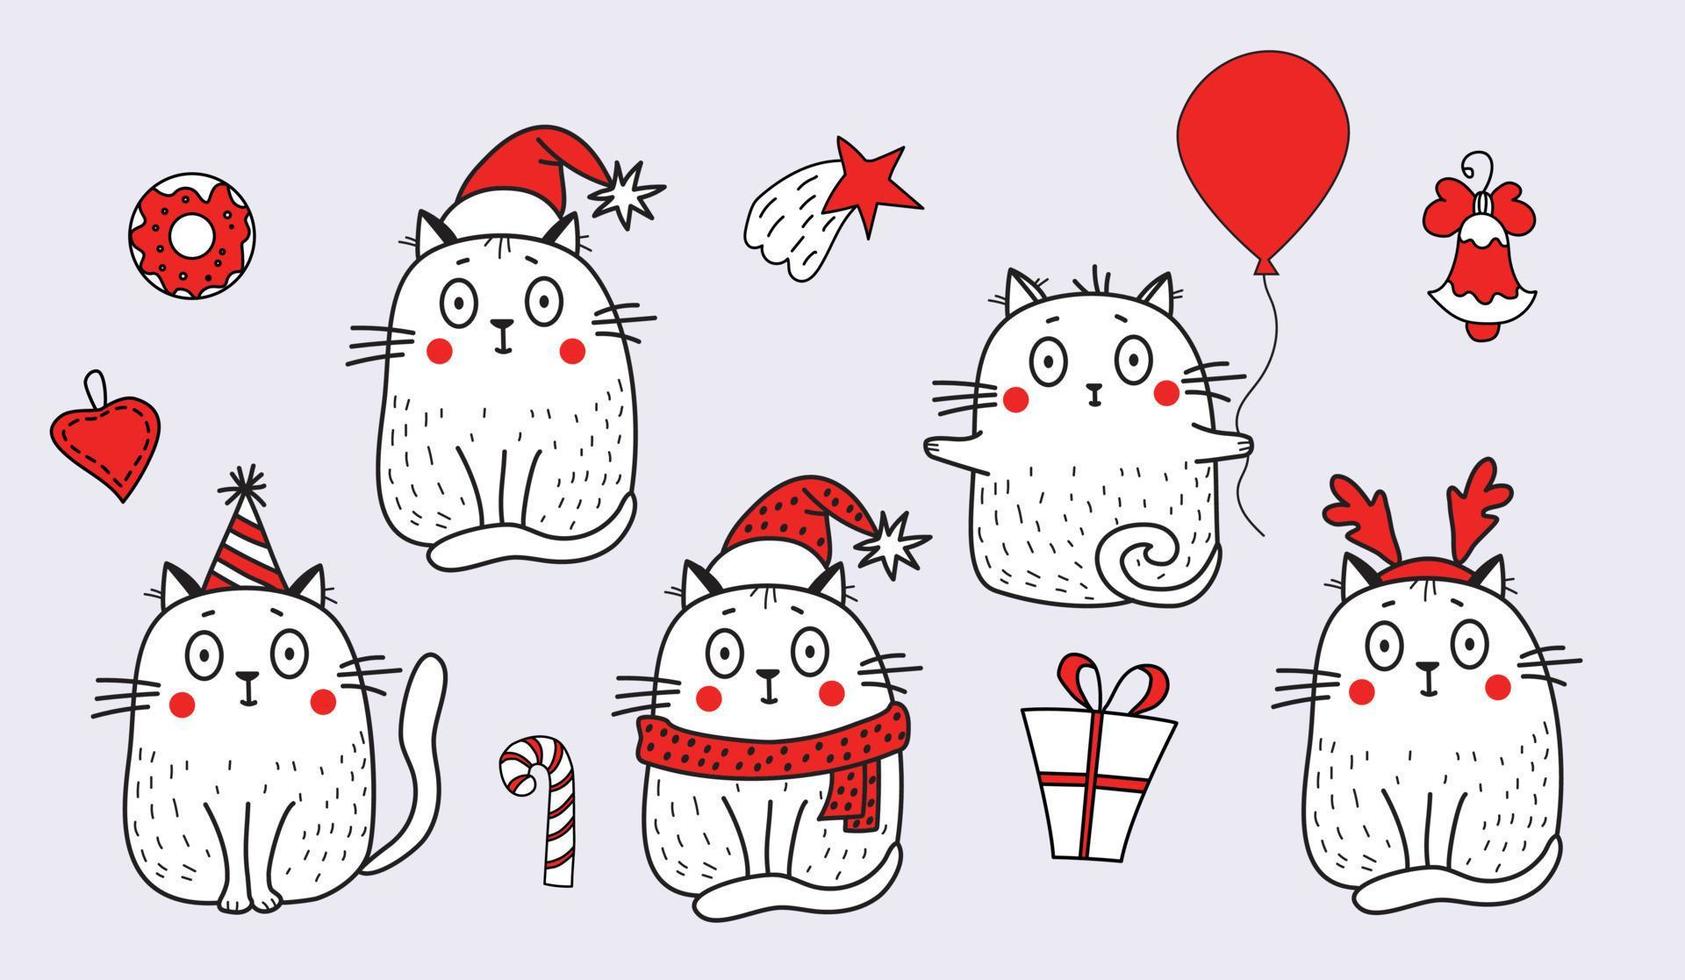 uppsättning av katter i festlig kläder, i santa hatt, hatt med horn, födelsedag keps, med ballong och objekt för jul - stjärna, klocka, gåva och sötsaker. vektor illustration för design.